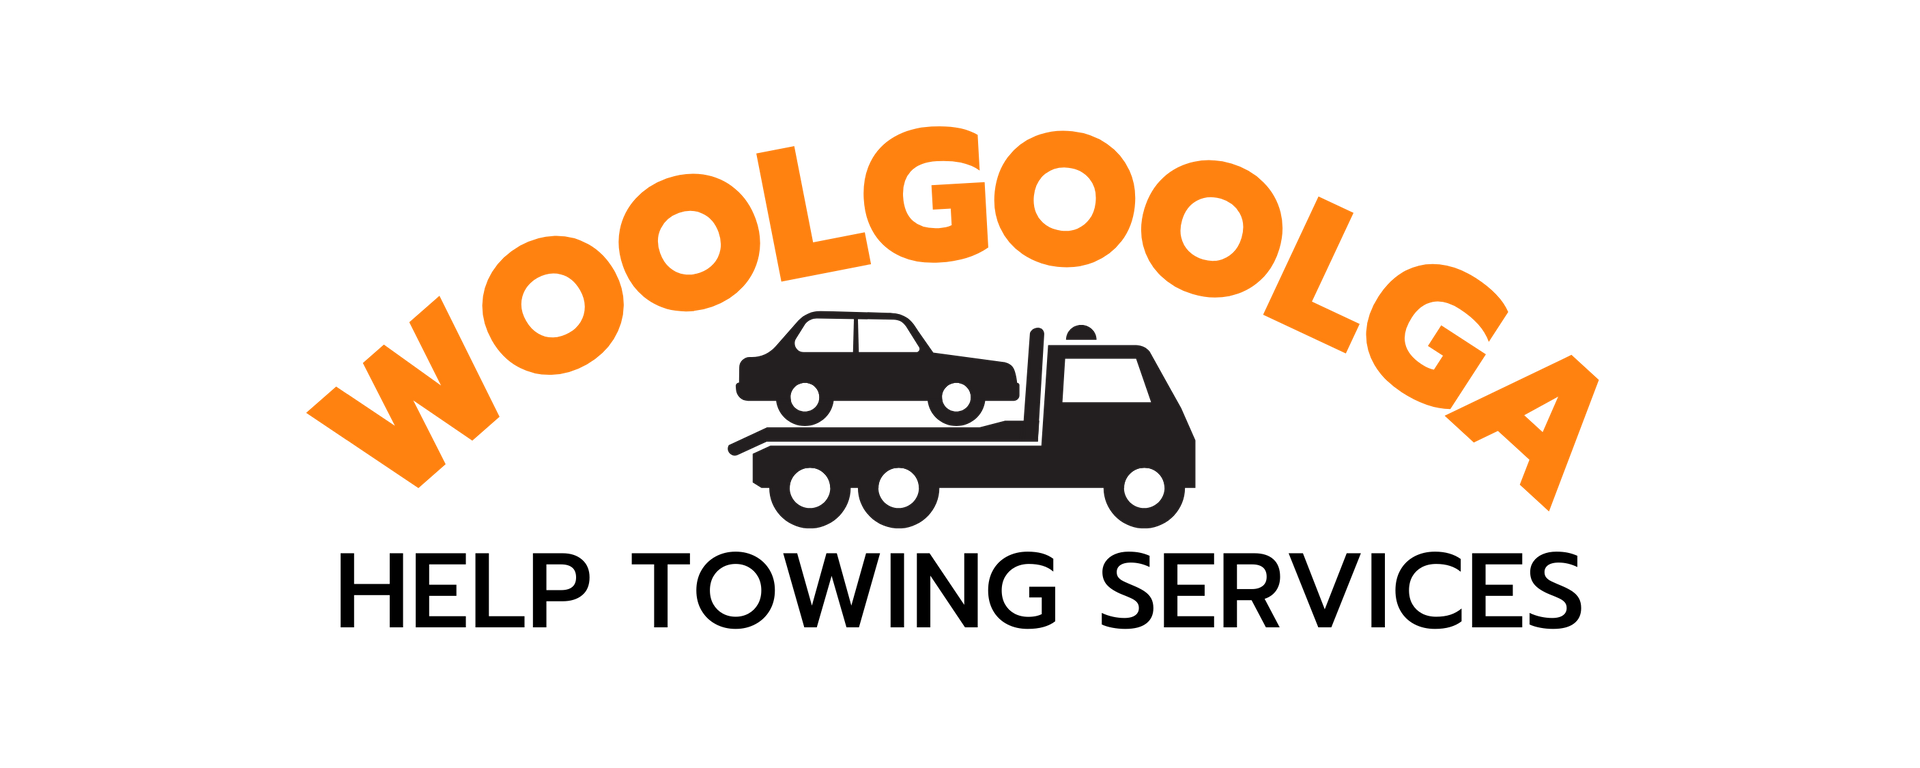 Woolgoolga Help Towing Services